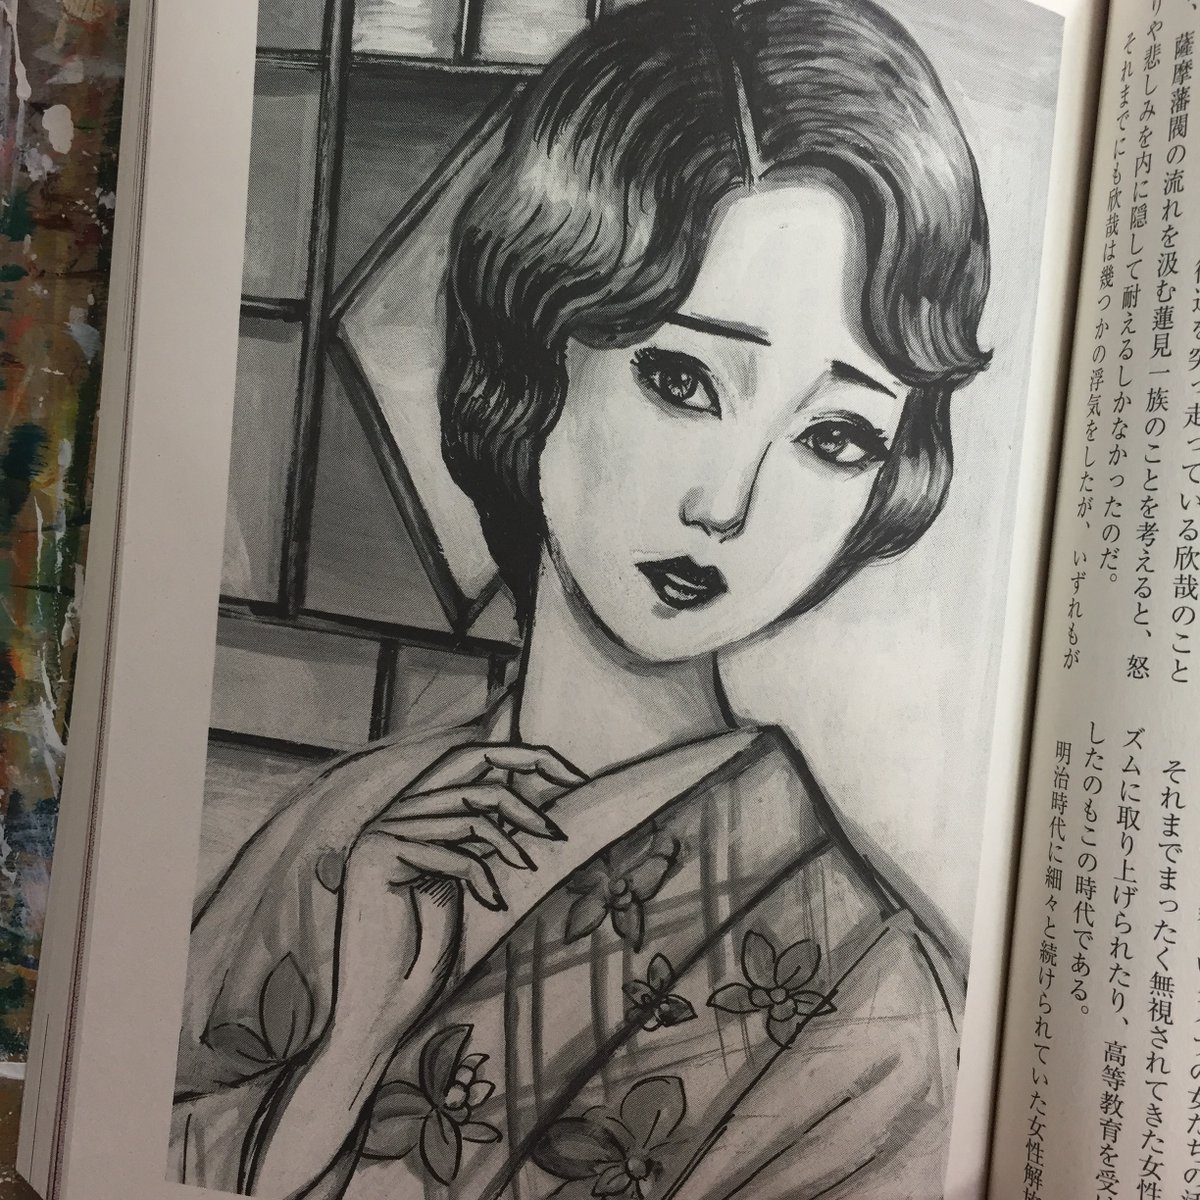 【お仕事】本日3/21発売の月刊官能小説雑誌「特選小説」@tokusensyosetsu
5月号で、高竜也先生の「浅草淫蕩期」の挿絵を描いてます。大正時代の上流貴婦人が乱れてゆくお話です。 